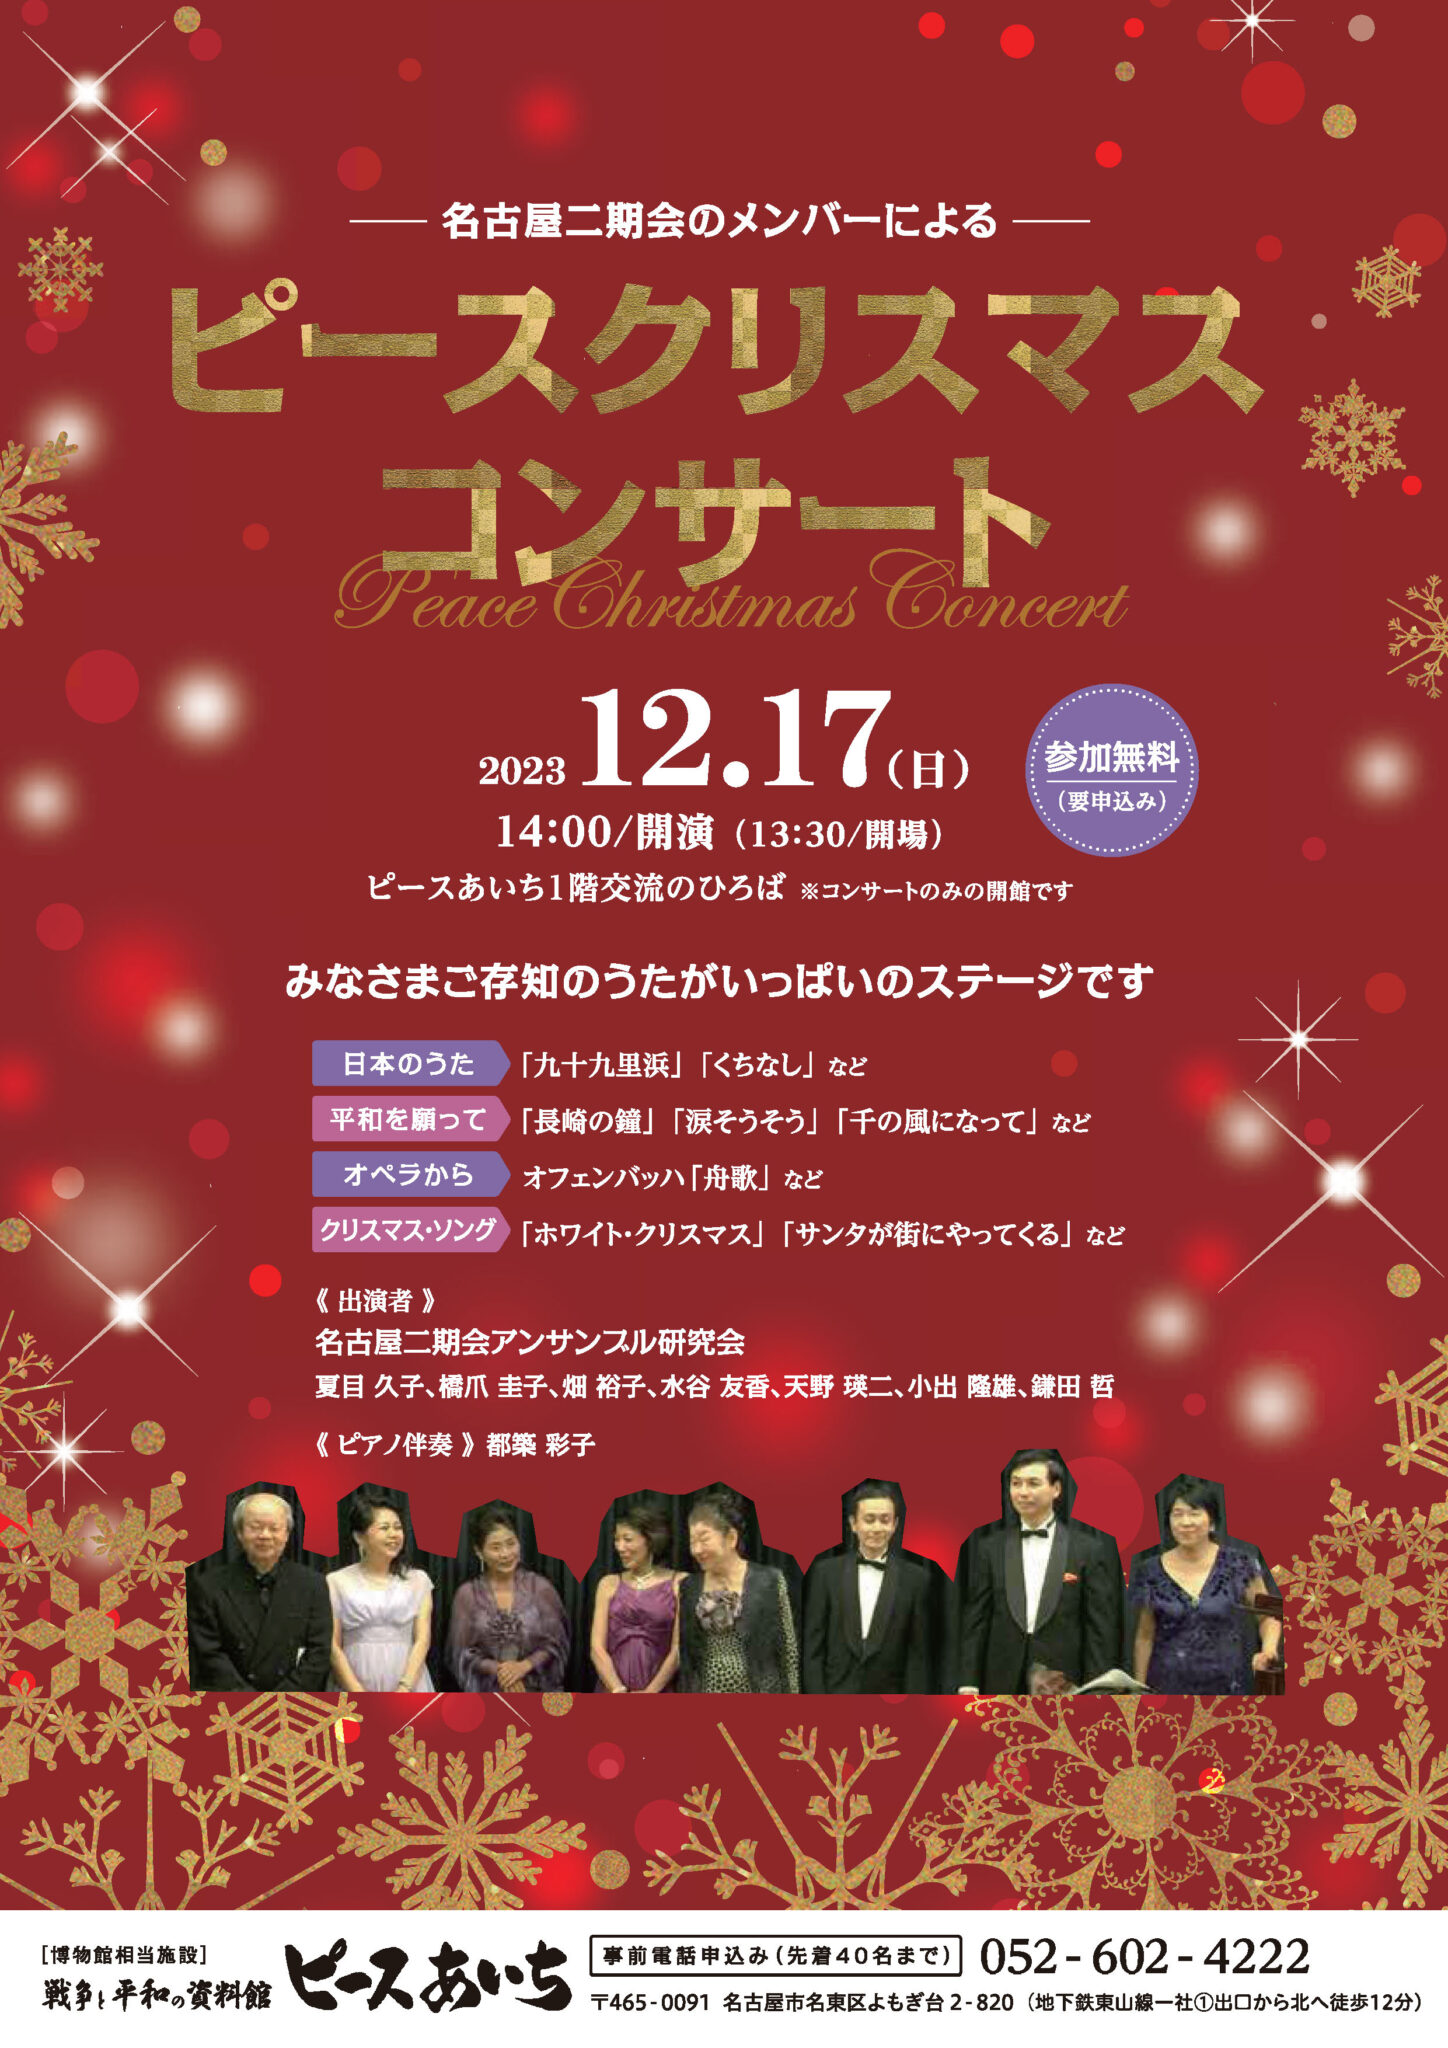 名古屋二期会アンサンブル研究会による「ピース・クリスマスコンサート」